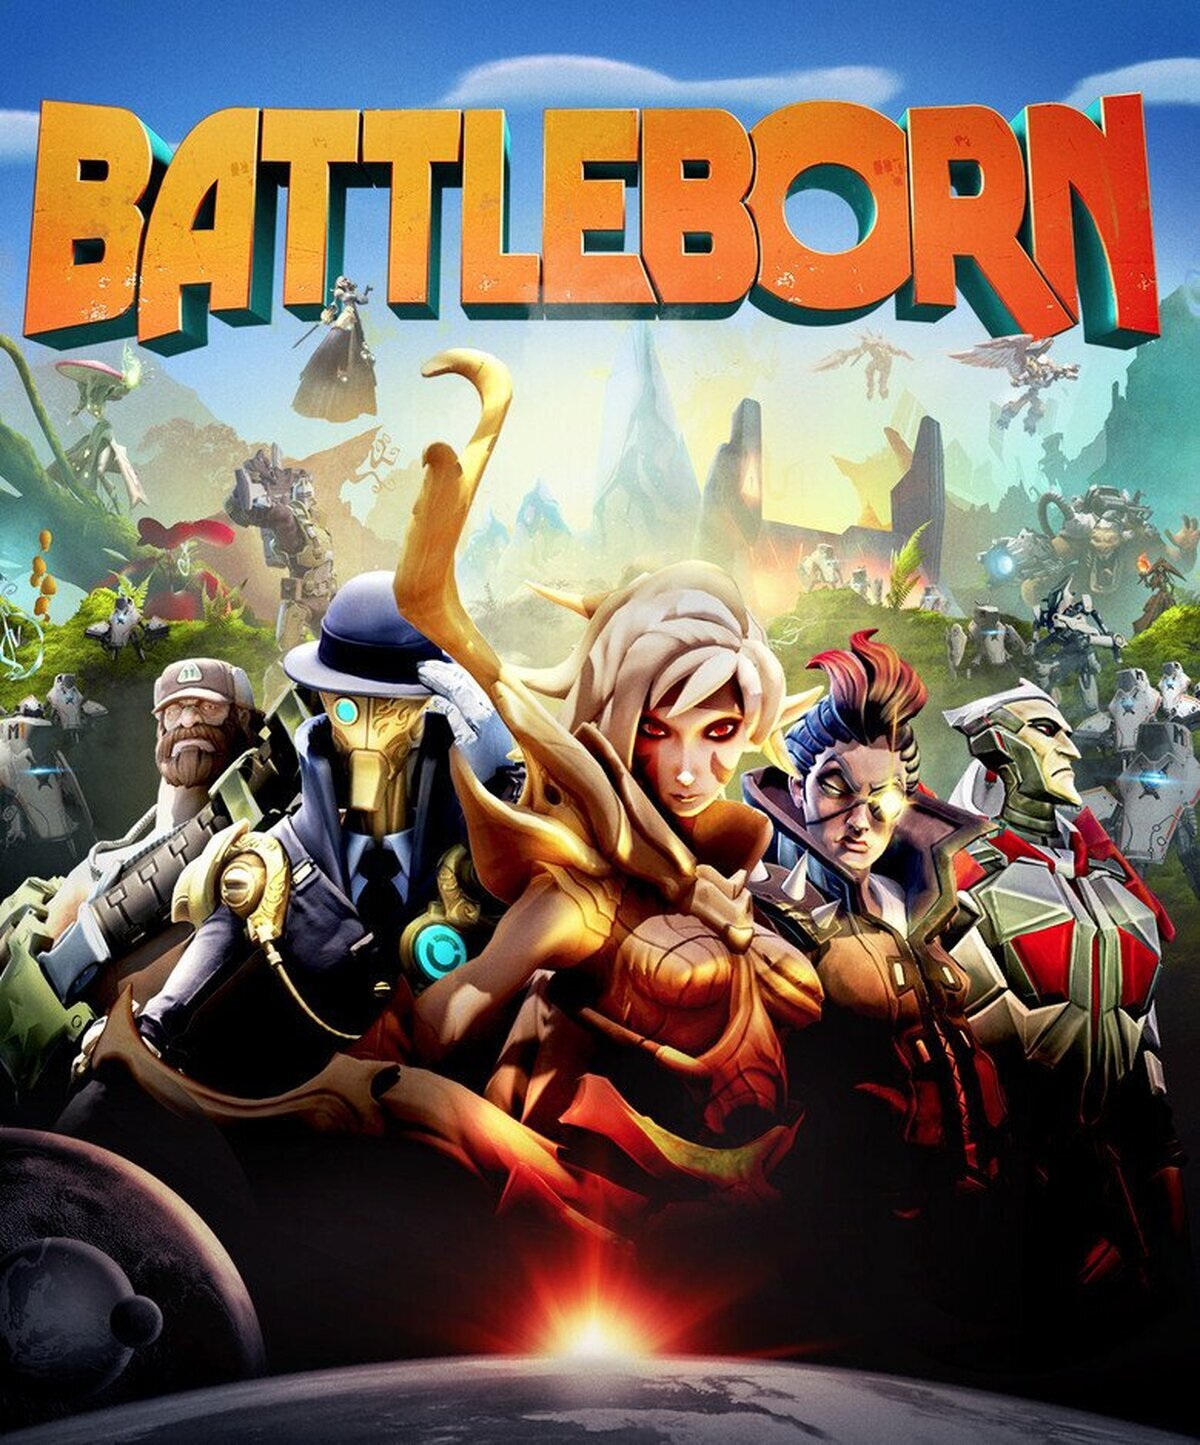 Gearbox anuncia Battleborn, una mezcla entre MOBA y juego de acción en primera persona